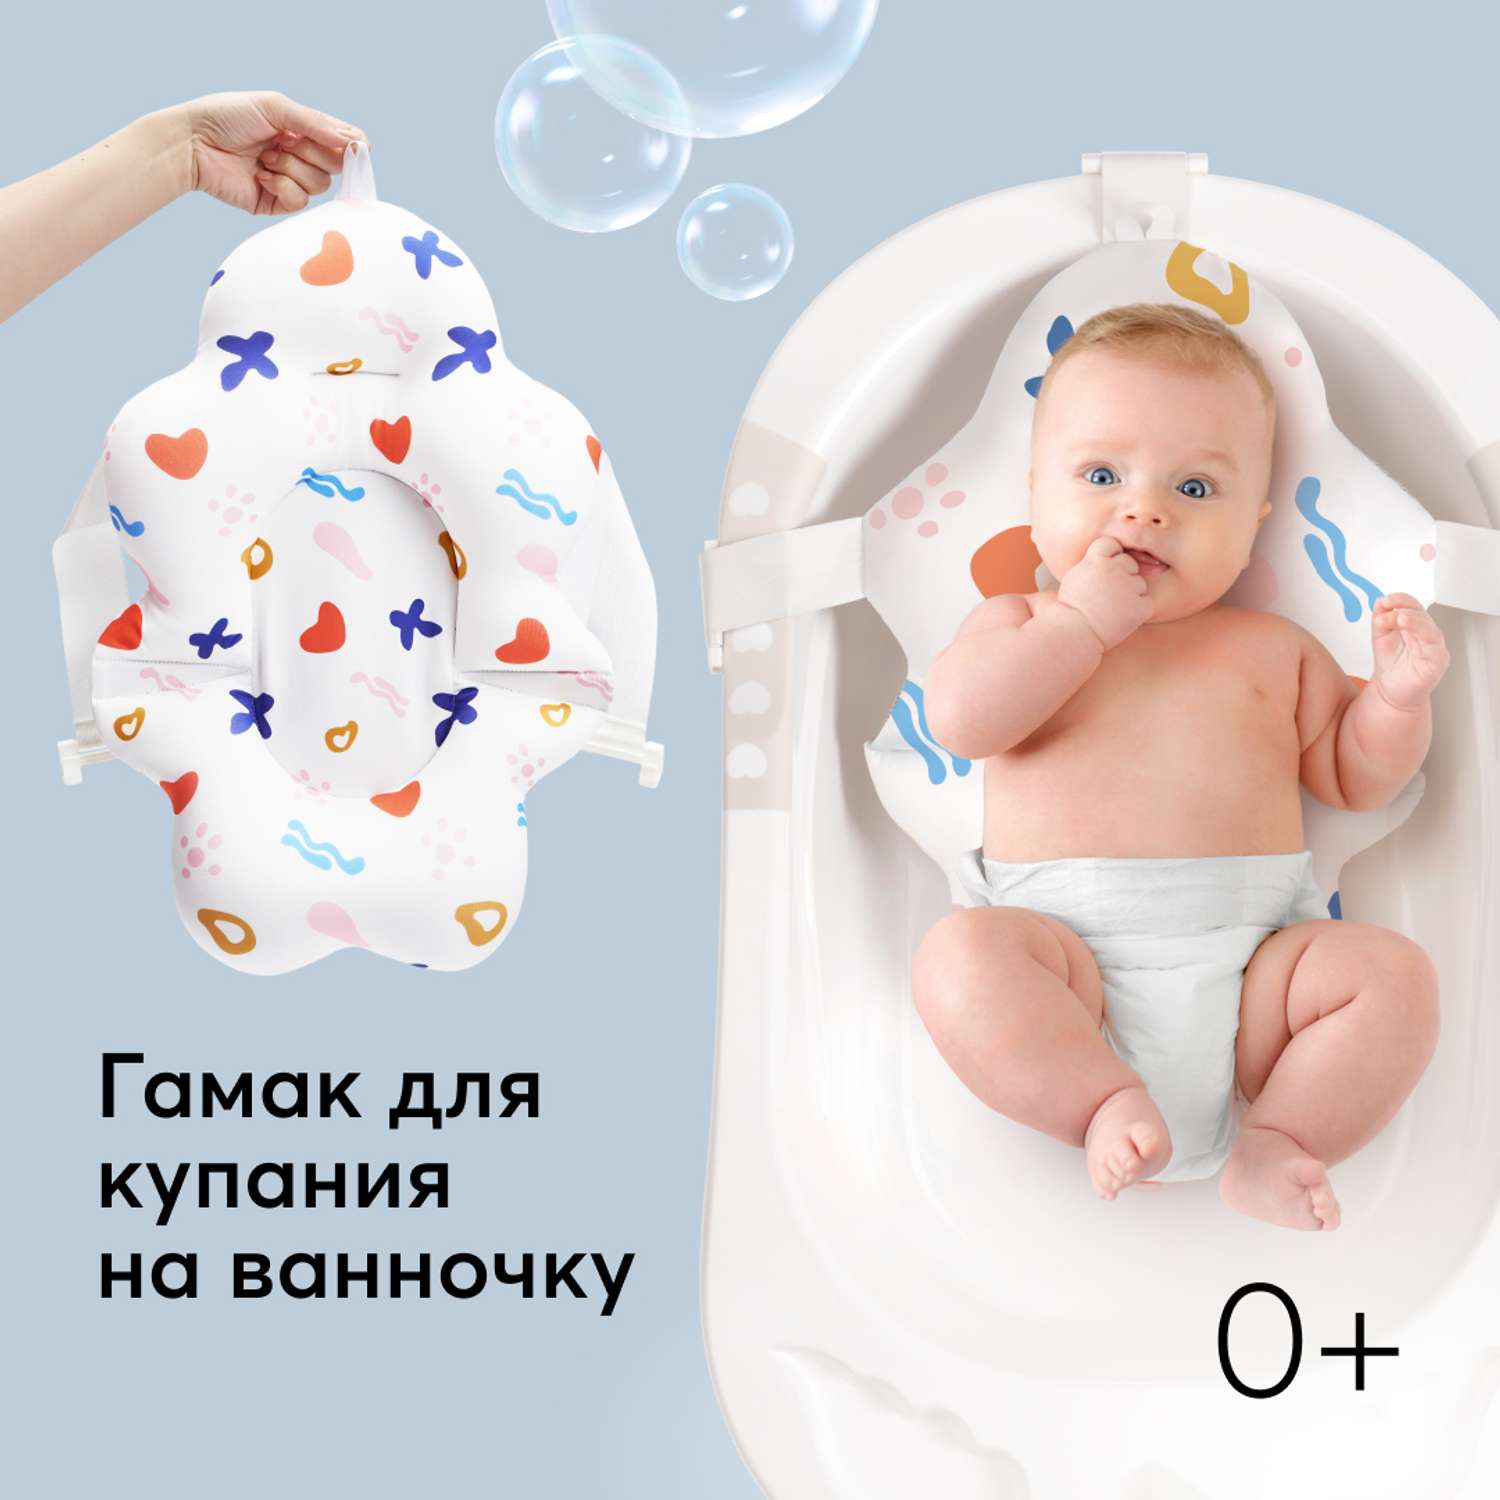 Гамак для купания Happy Baby для новорожденных белый - фото 1